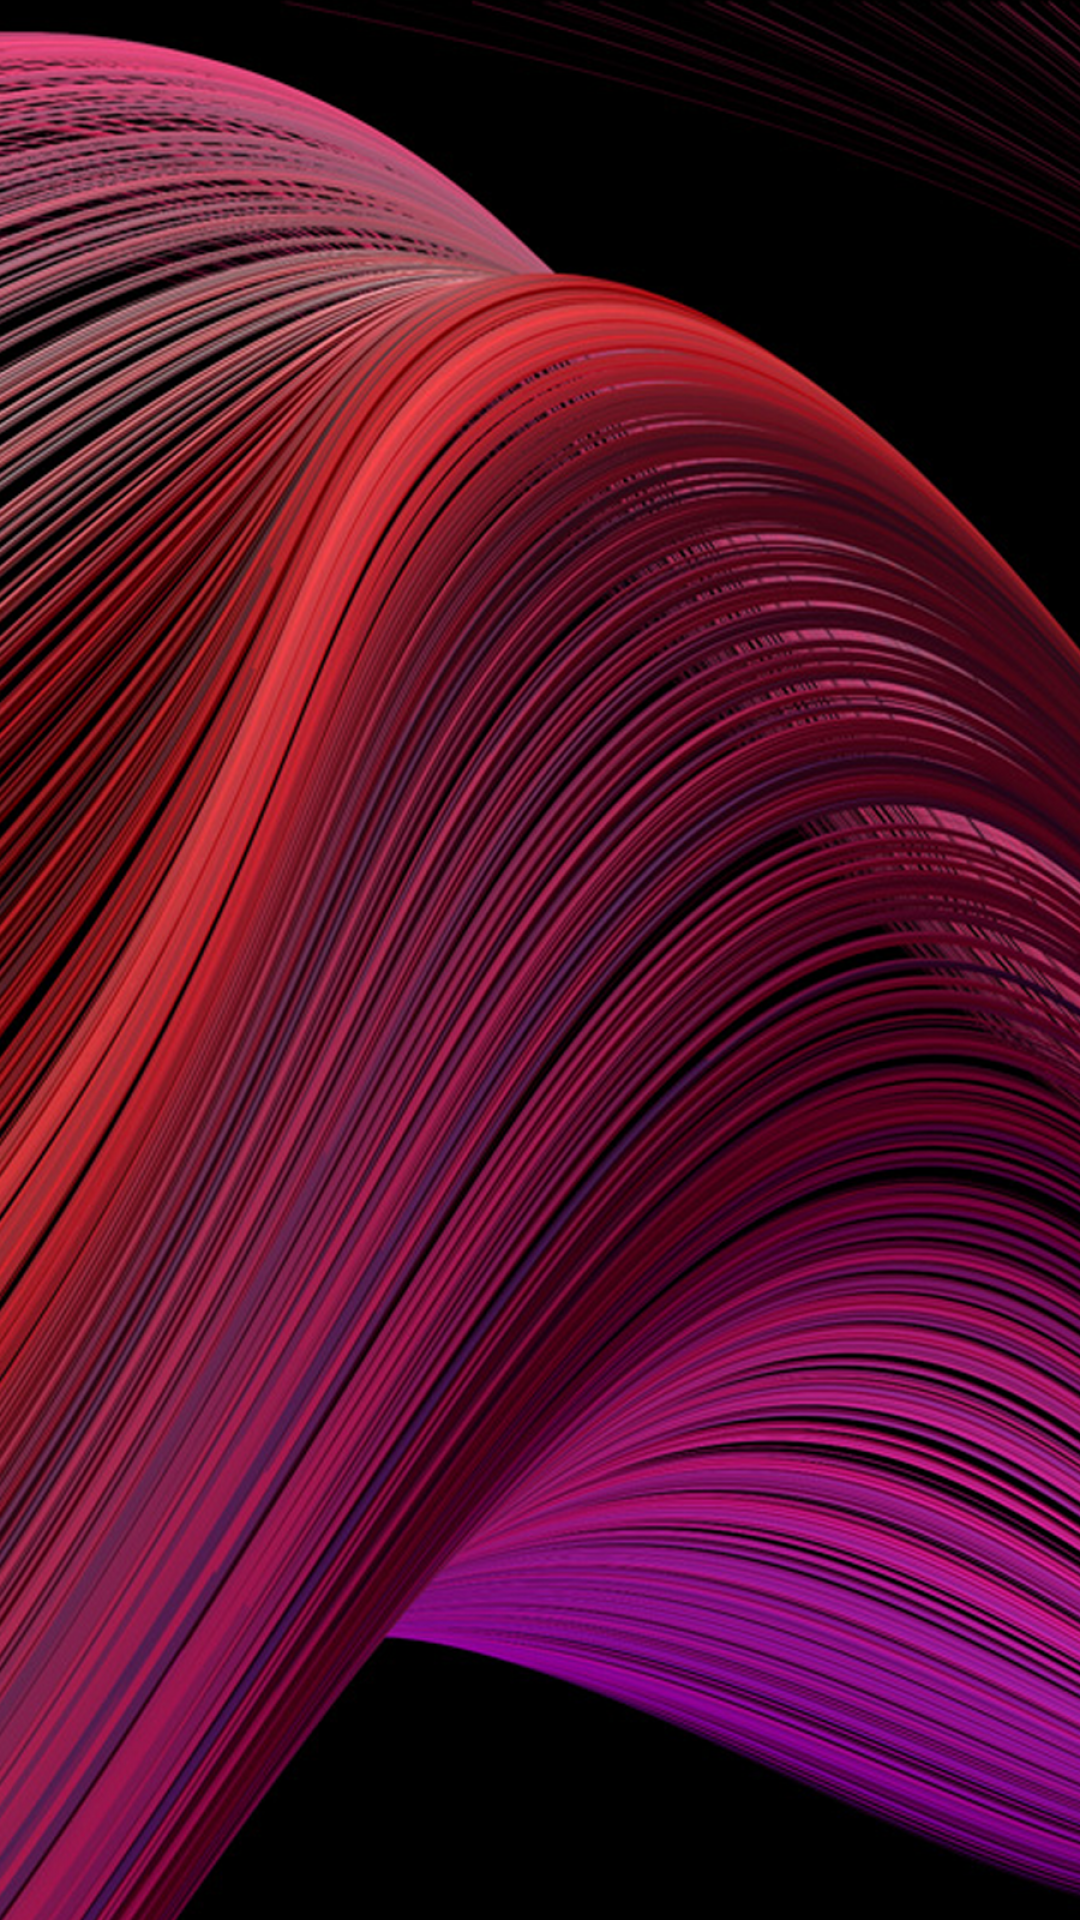 MacBook Air Wallpaper 4K, Retina, 2020, Waves, Abstract, #500